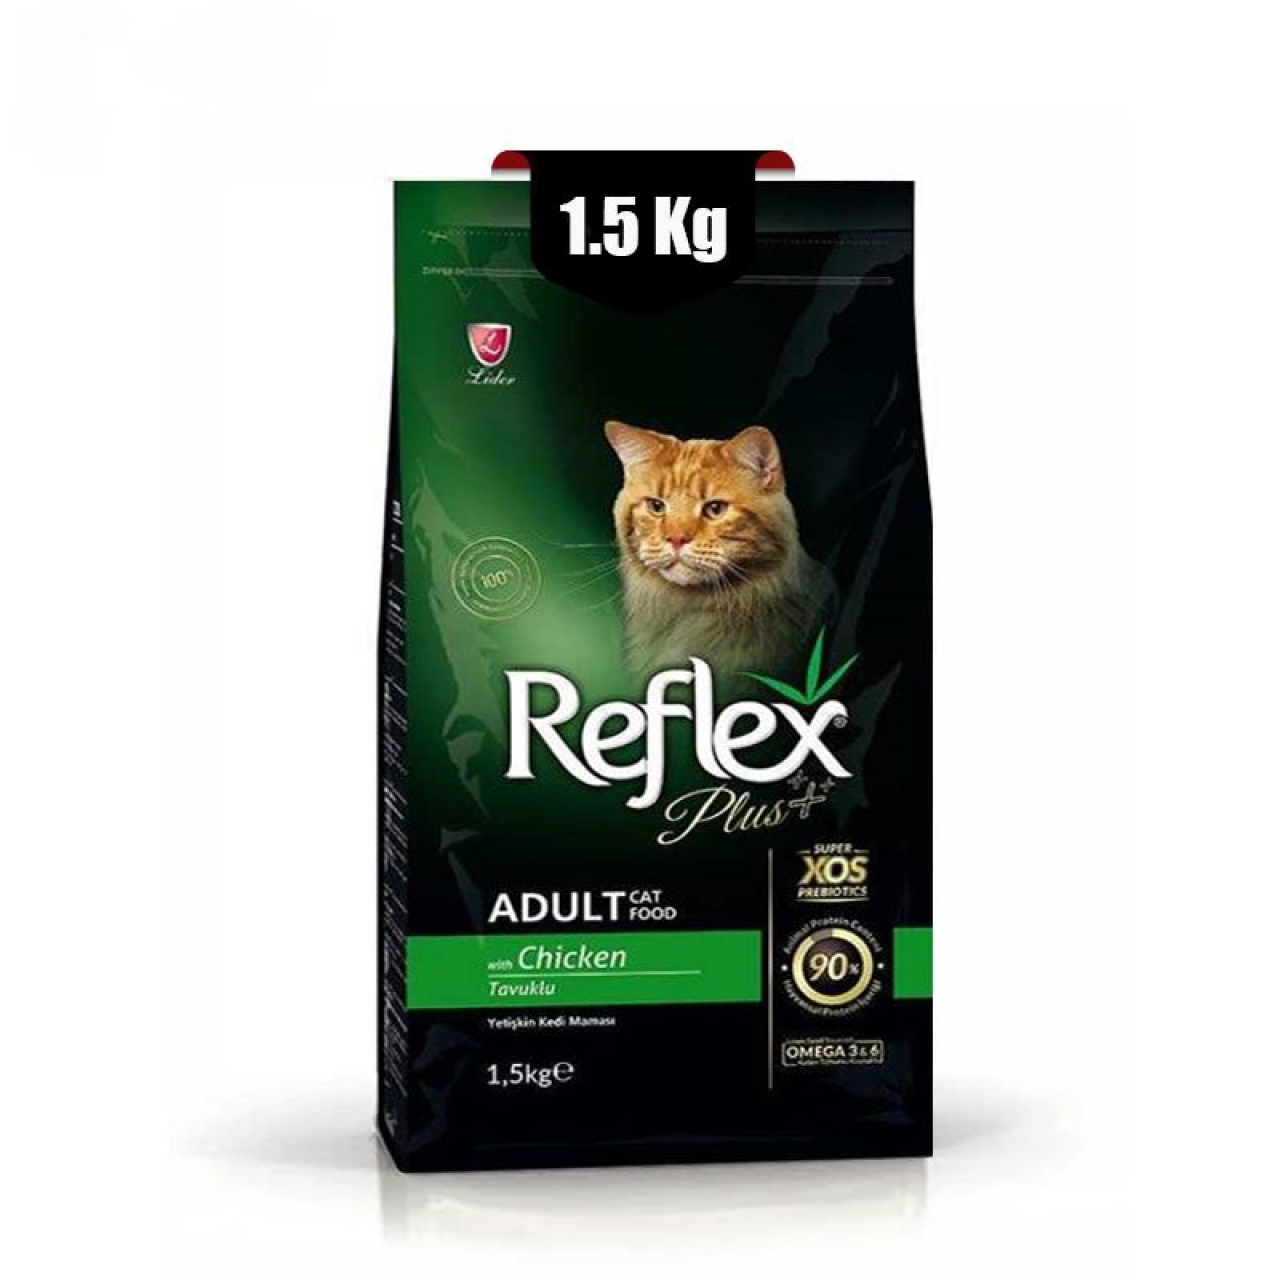 غذای خشک گربه بالغ رفلکس پلاس با طعم مرغ وزن 1.5 کیلوگرم